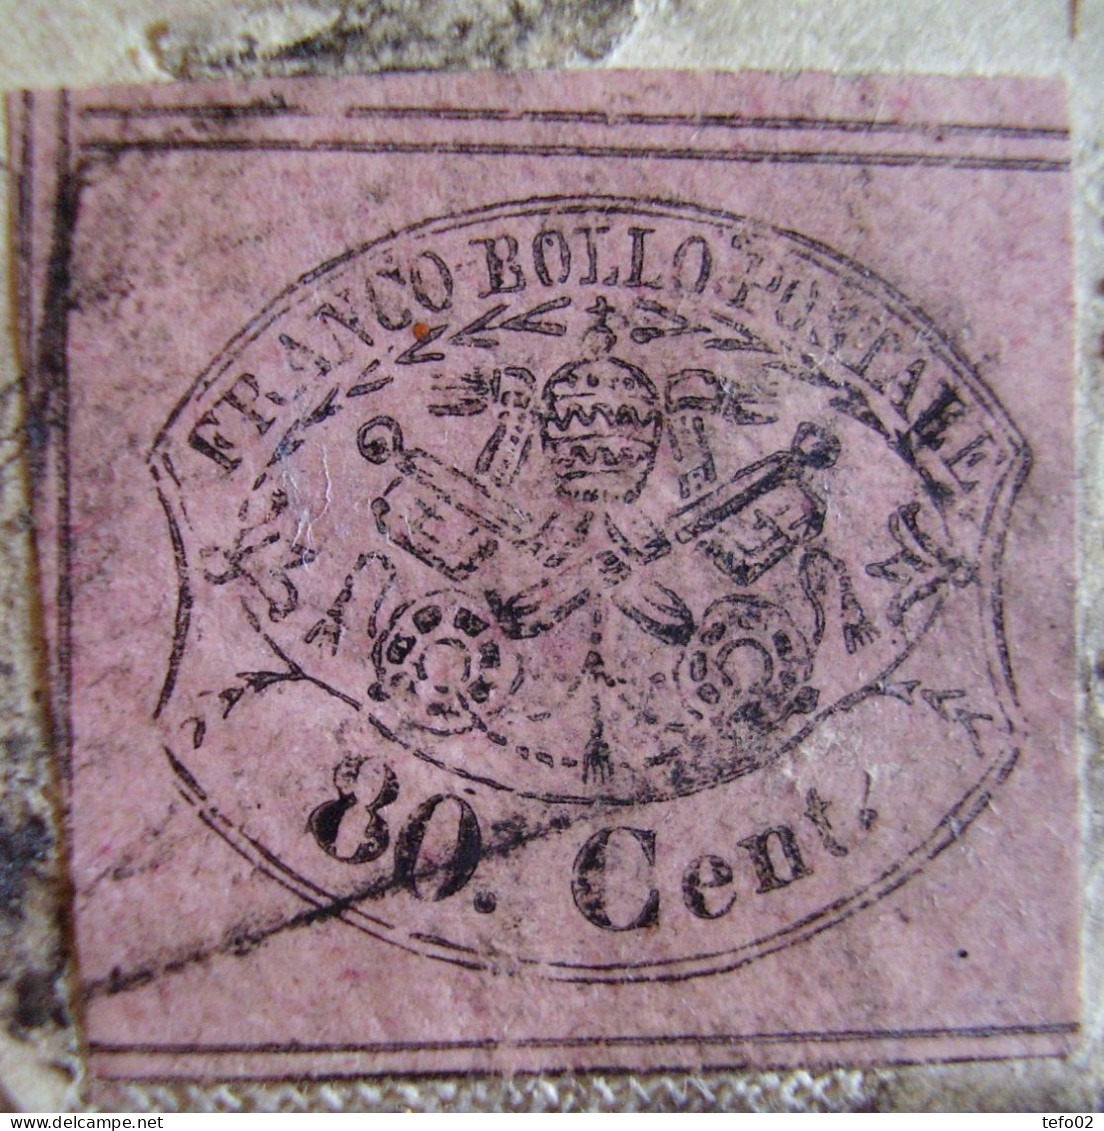 Pontificio. Storia postale. Raccomandata per la Prussia con affrancatura quadricolore mista